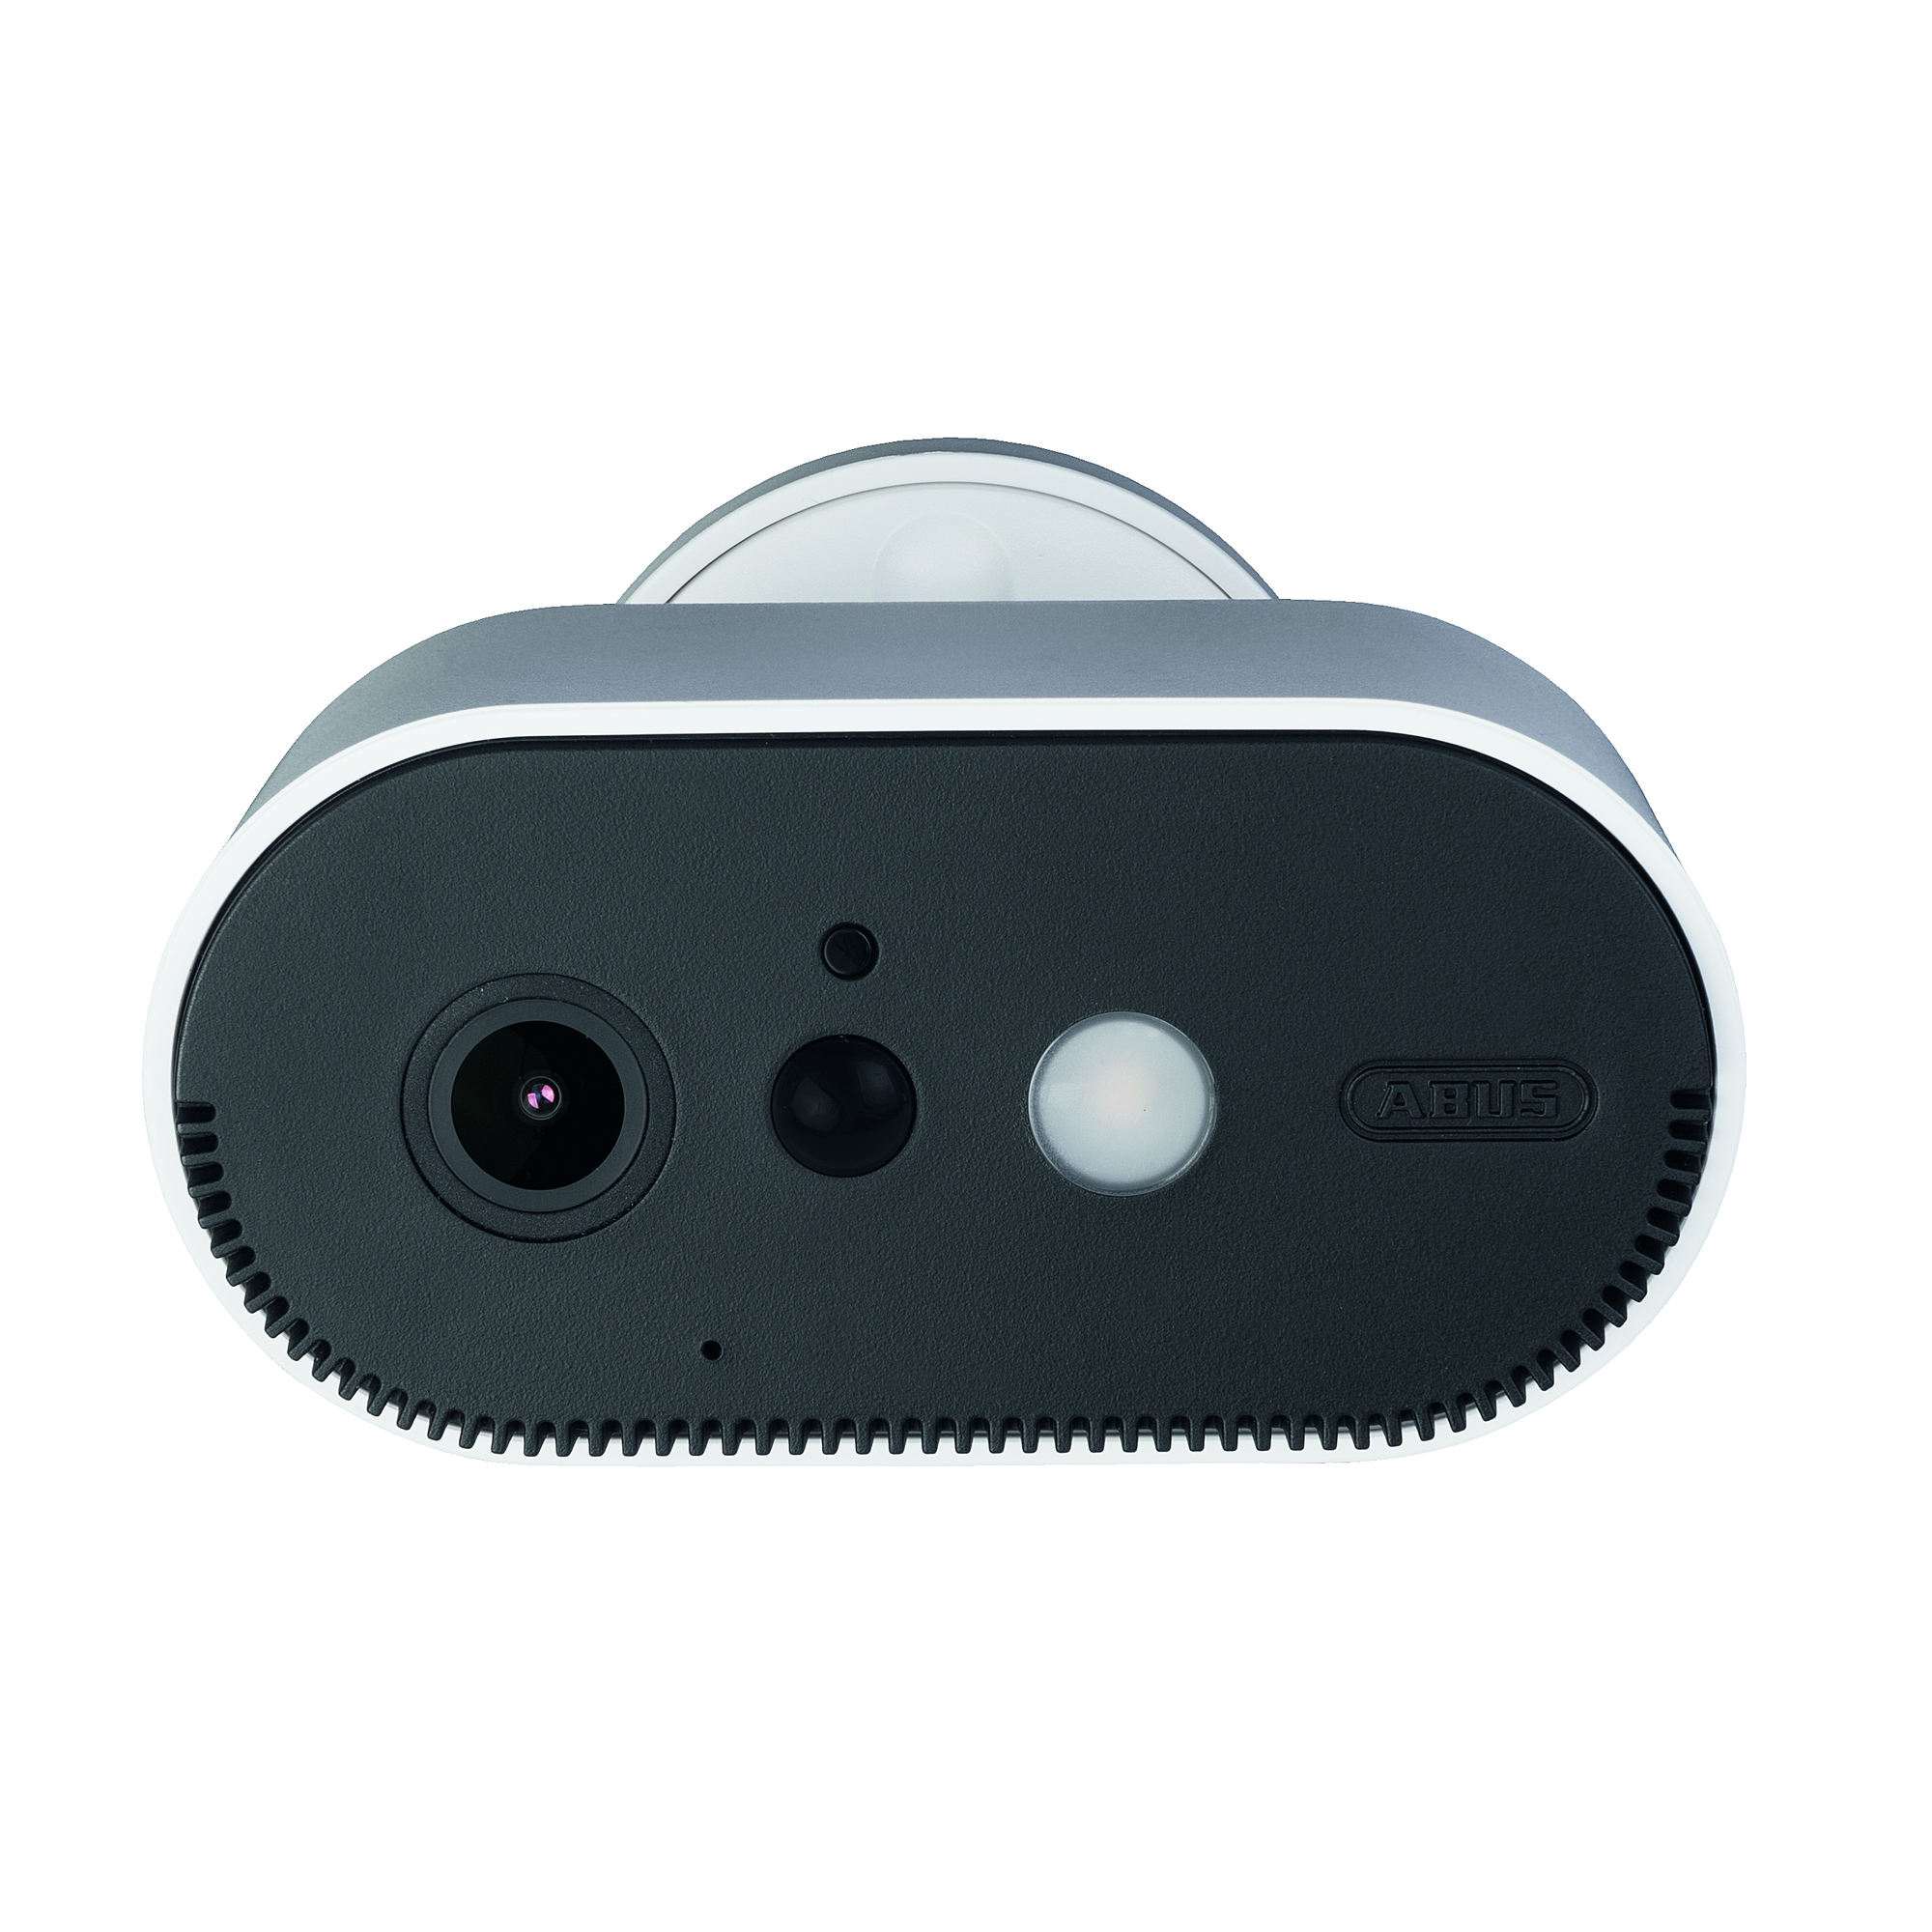 Akku-Überwachungskamera 'PPIC90000' mit WLAN-Basisstation + product picture